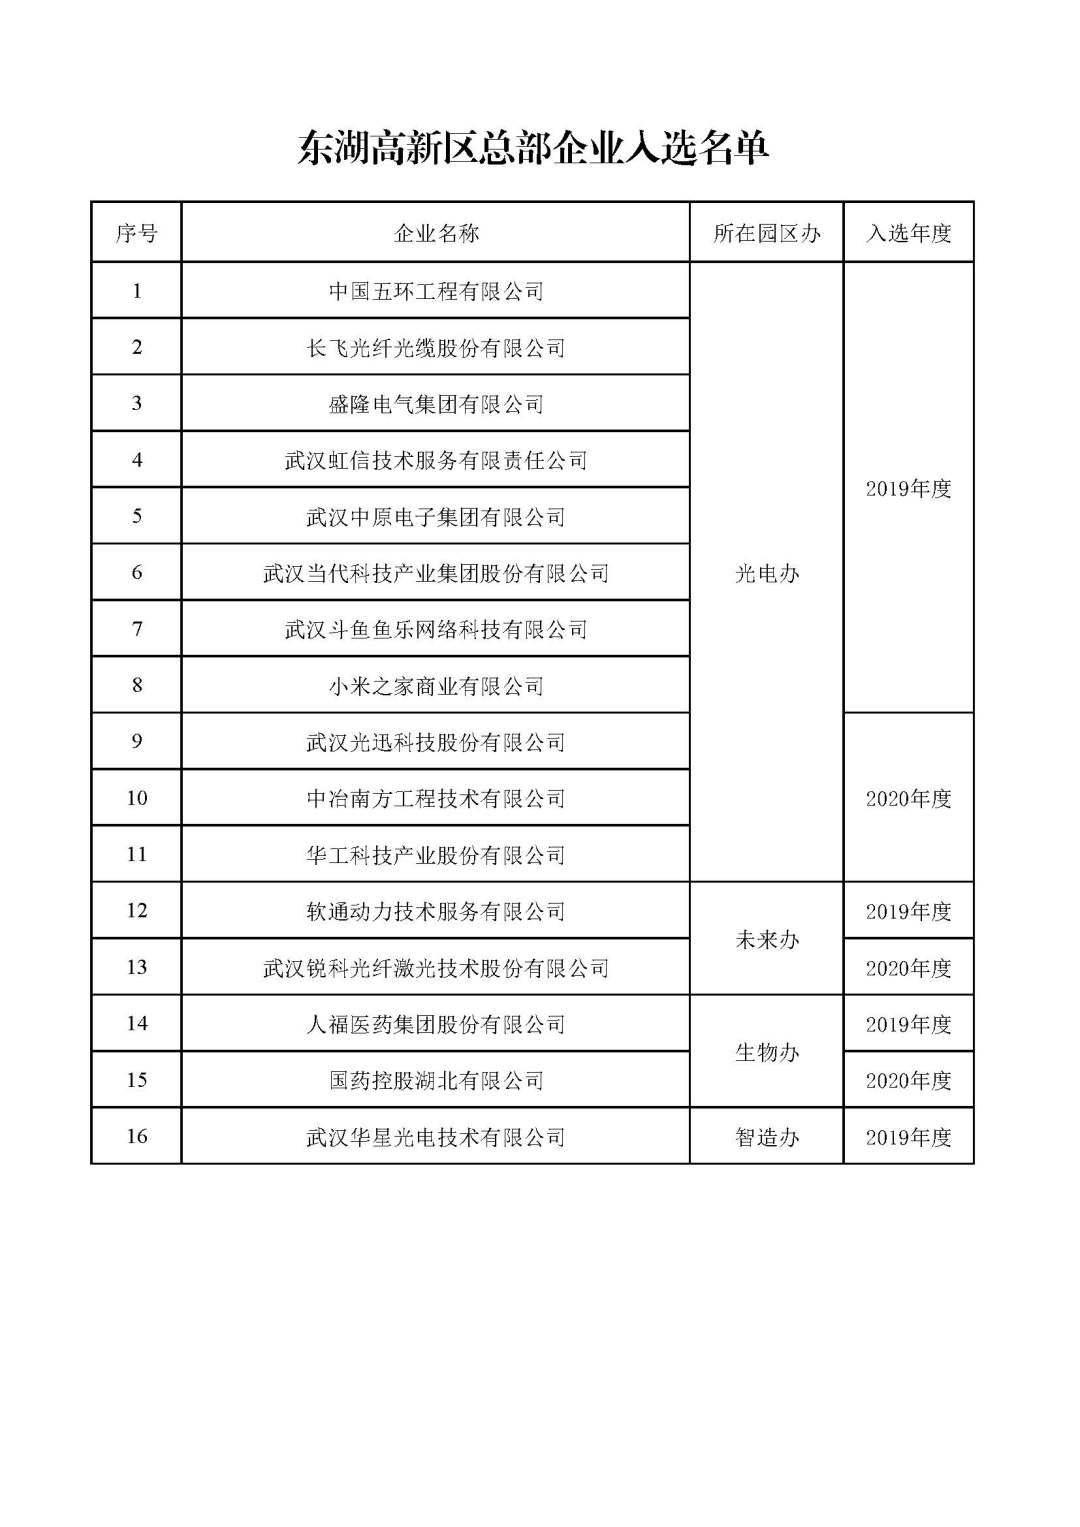 1、武汉市总部企业名单.jpg